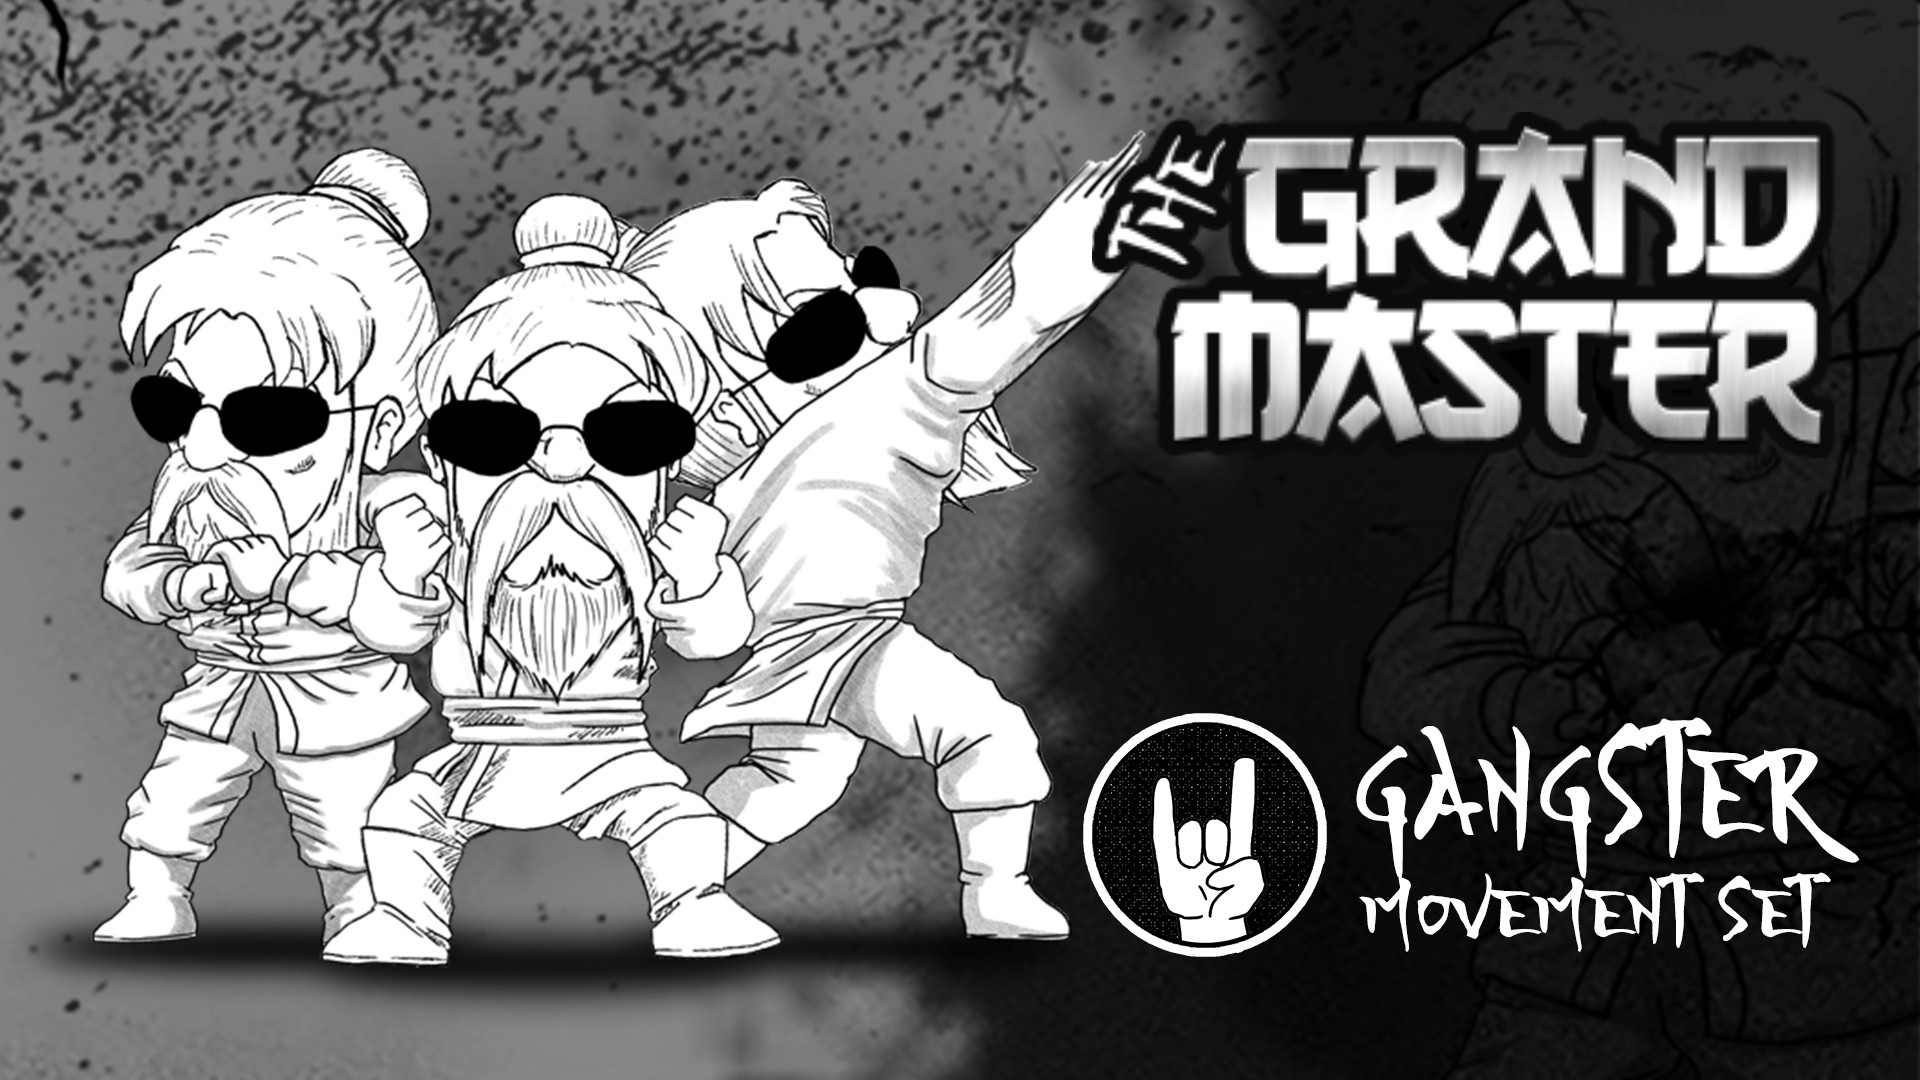 The Grandmaster - Gangster Movement Set Featured Screenshot #1